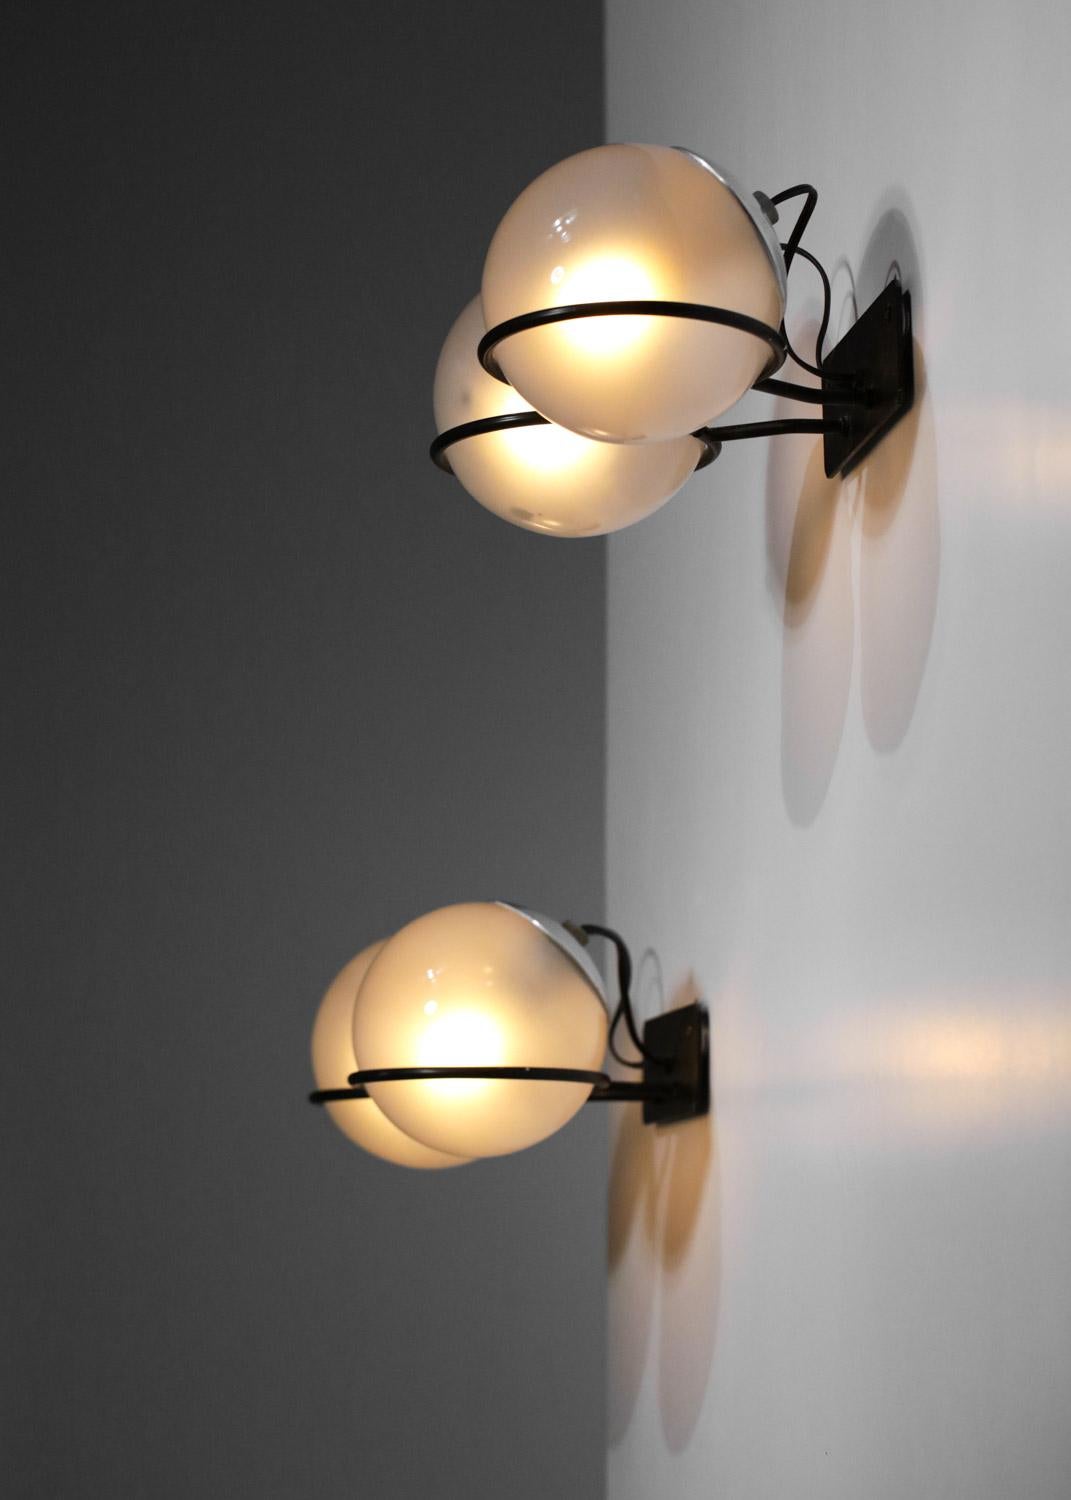 Paar Wandlampen Modell 237/2 des berühmten italienischen Designers Gino Sarfatti, herausgegeben von Arteluce in den 1950er Jahren. Schwarz lackierte Metallstruktur (Originalfarbe) und doppelte Diffusoren in Form von Milchglas-Kugeln, die auf den